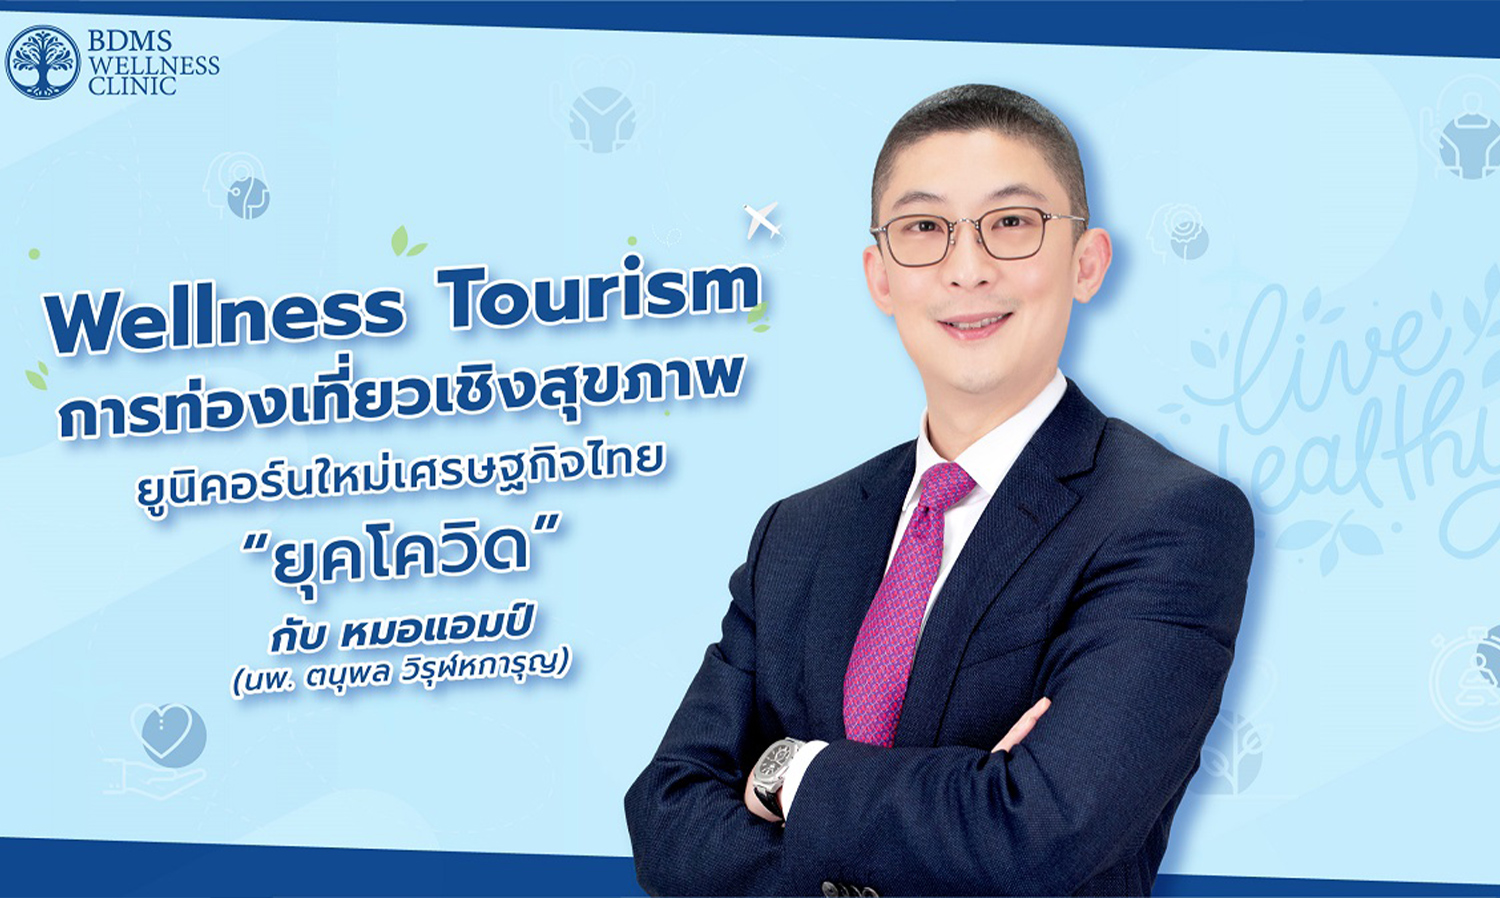 Wellness Tourism การท่องเที่ยวเชิงสุขภาพ ยูนิคอร์นใหม่เศรษฐกิจไทย “ยุคโควิด”